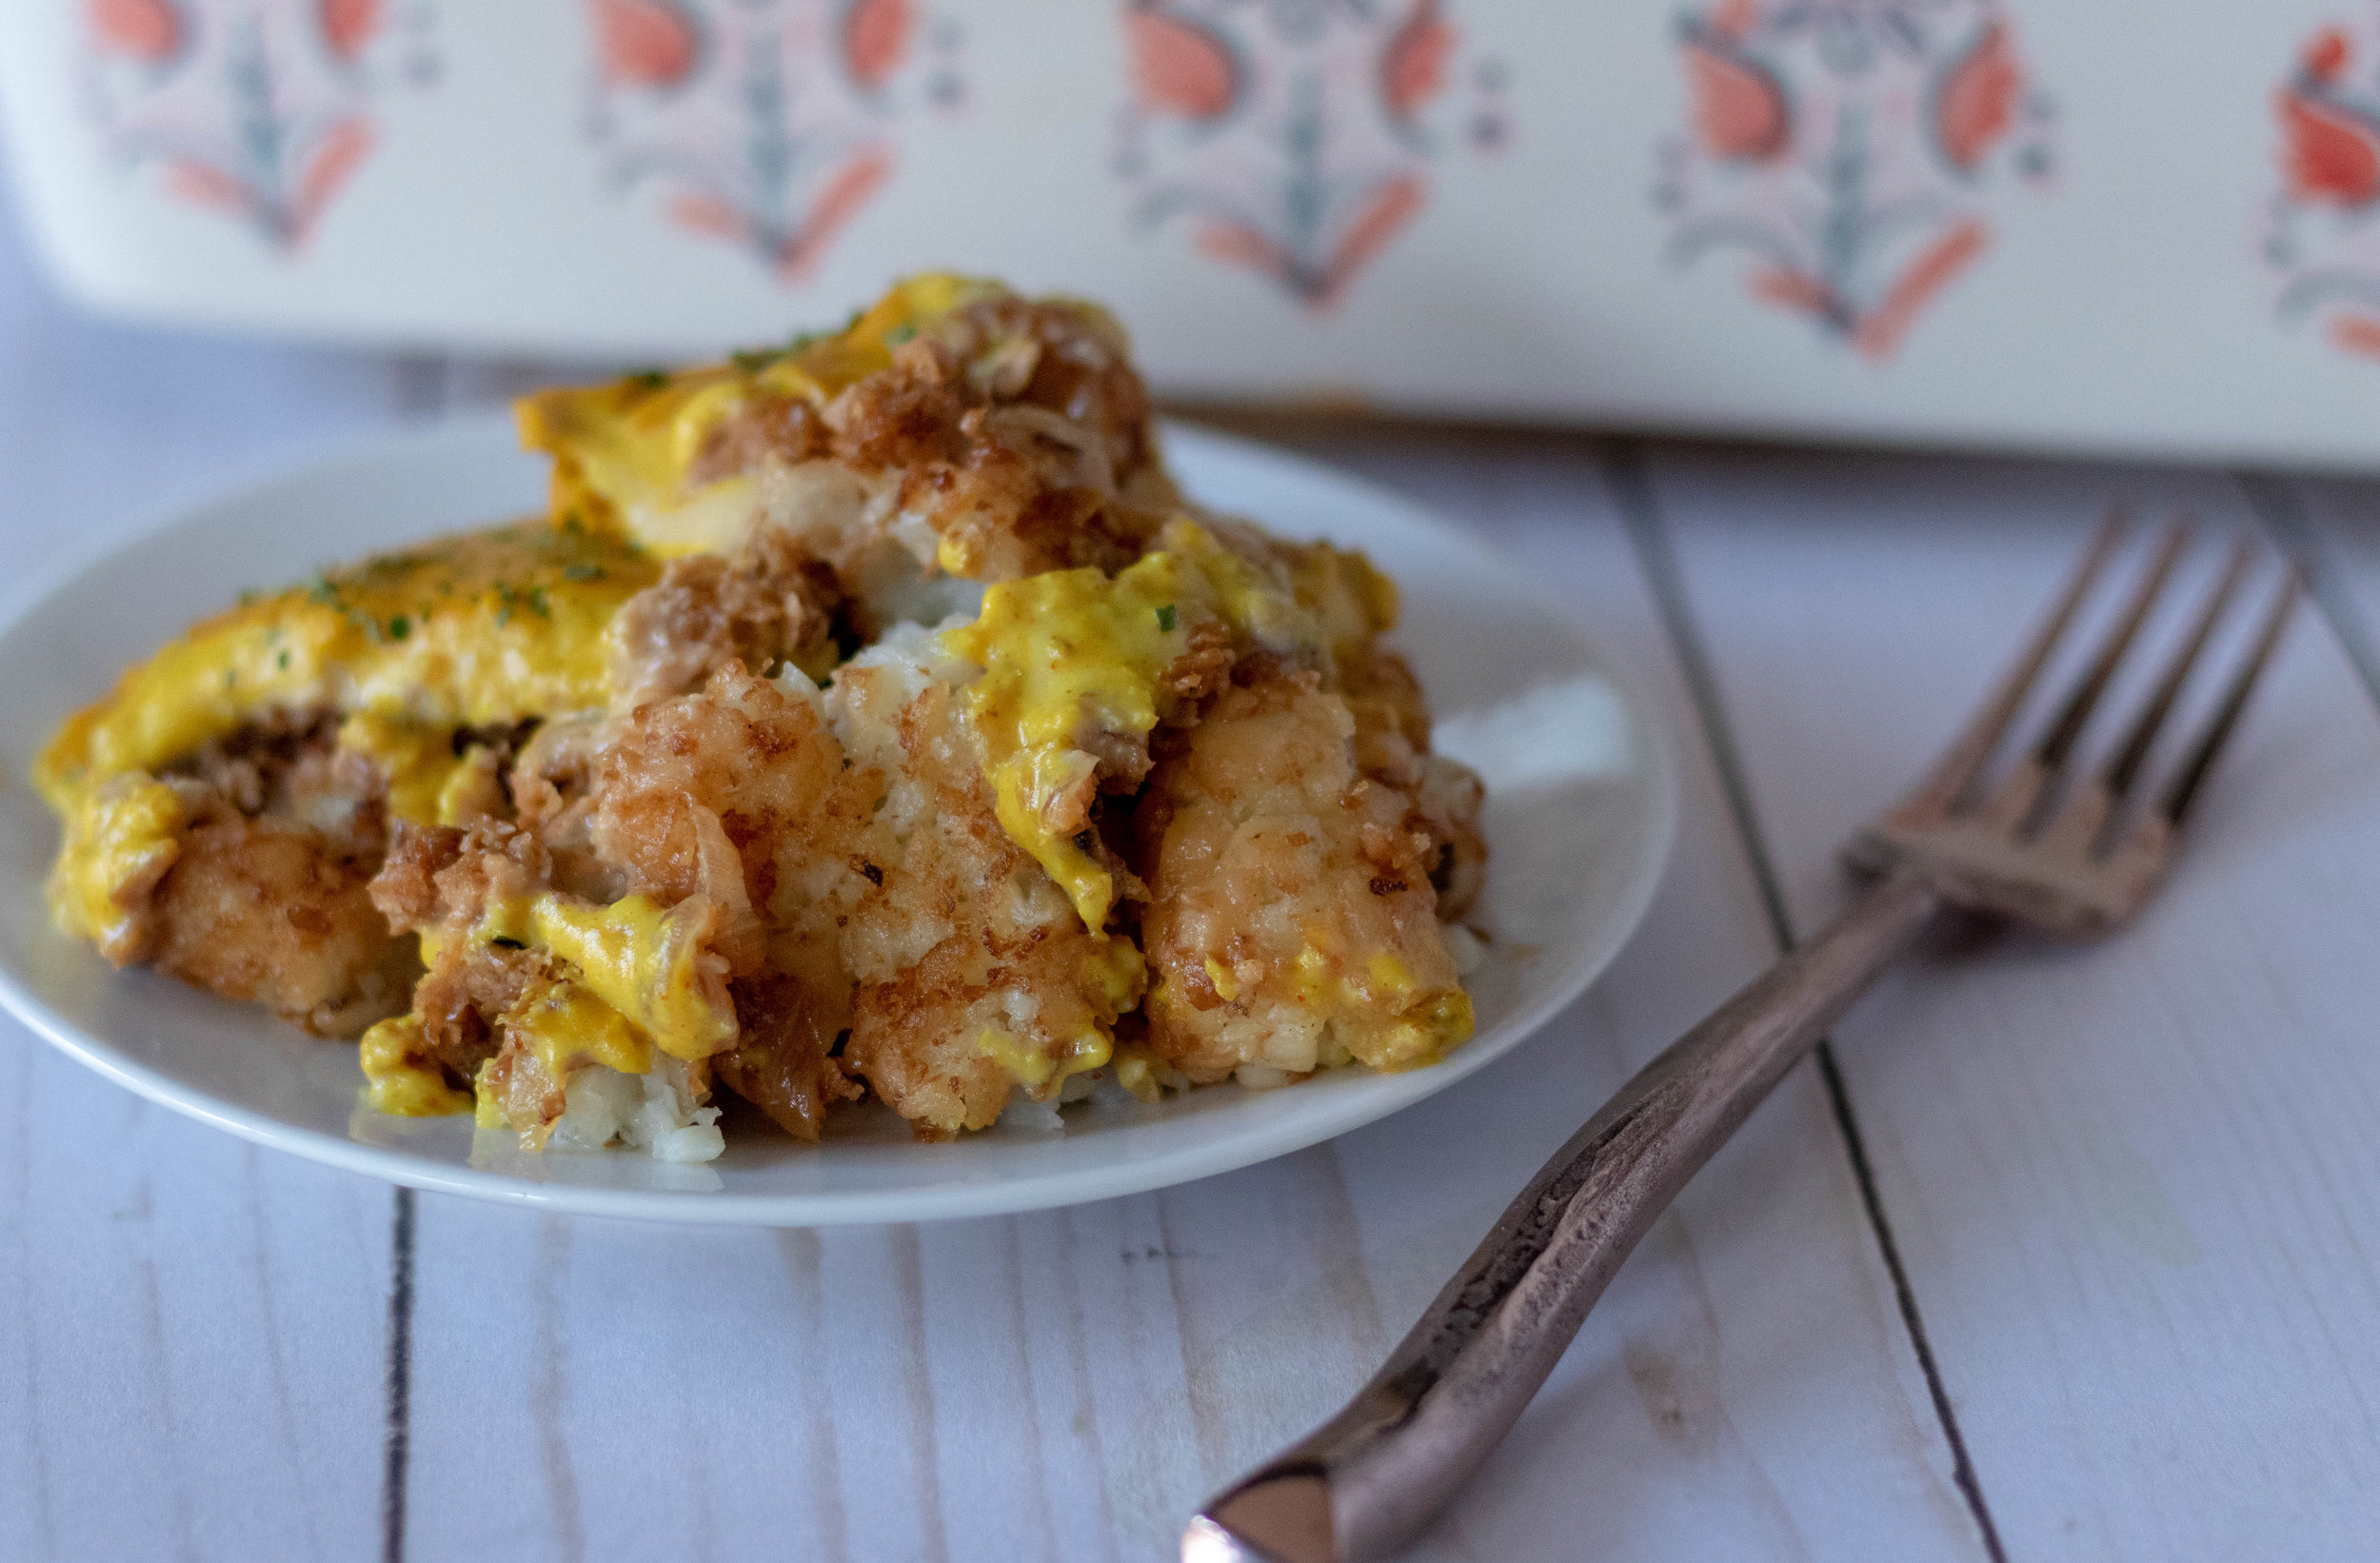 Vegan Potato Tots – Cheesy Tatar Tots recipe with potatoes